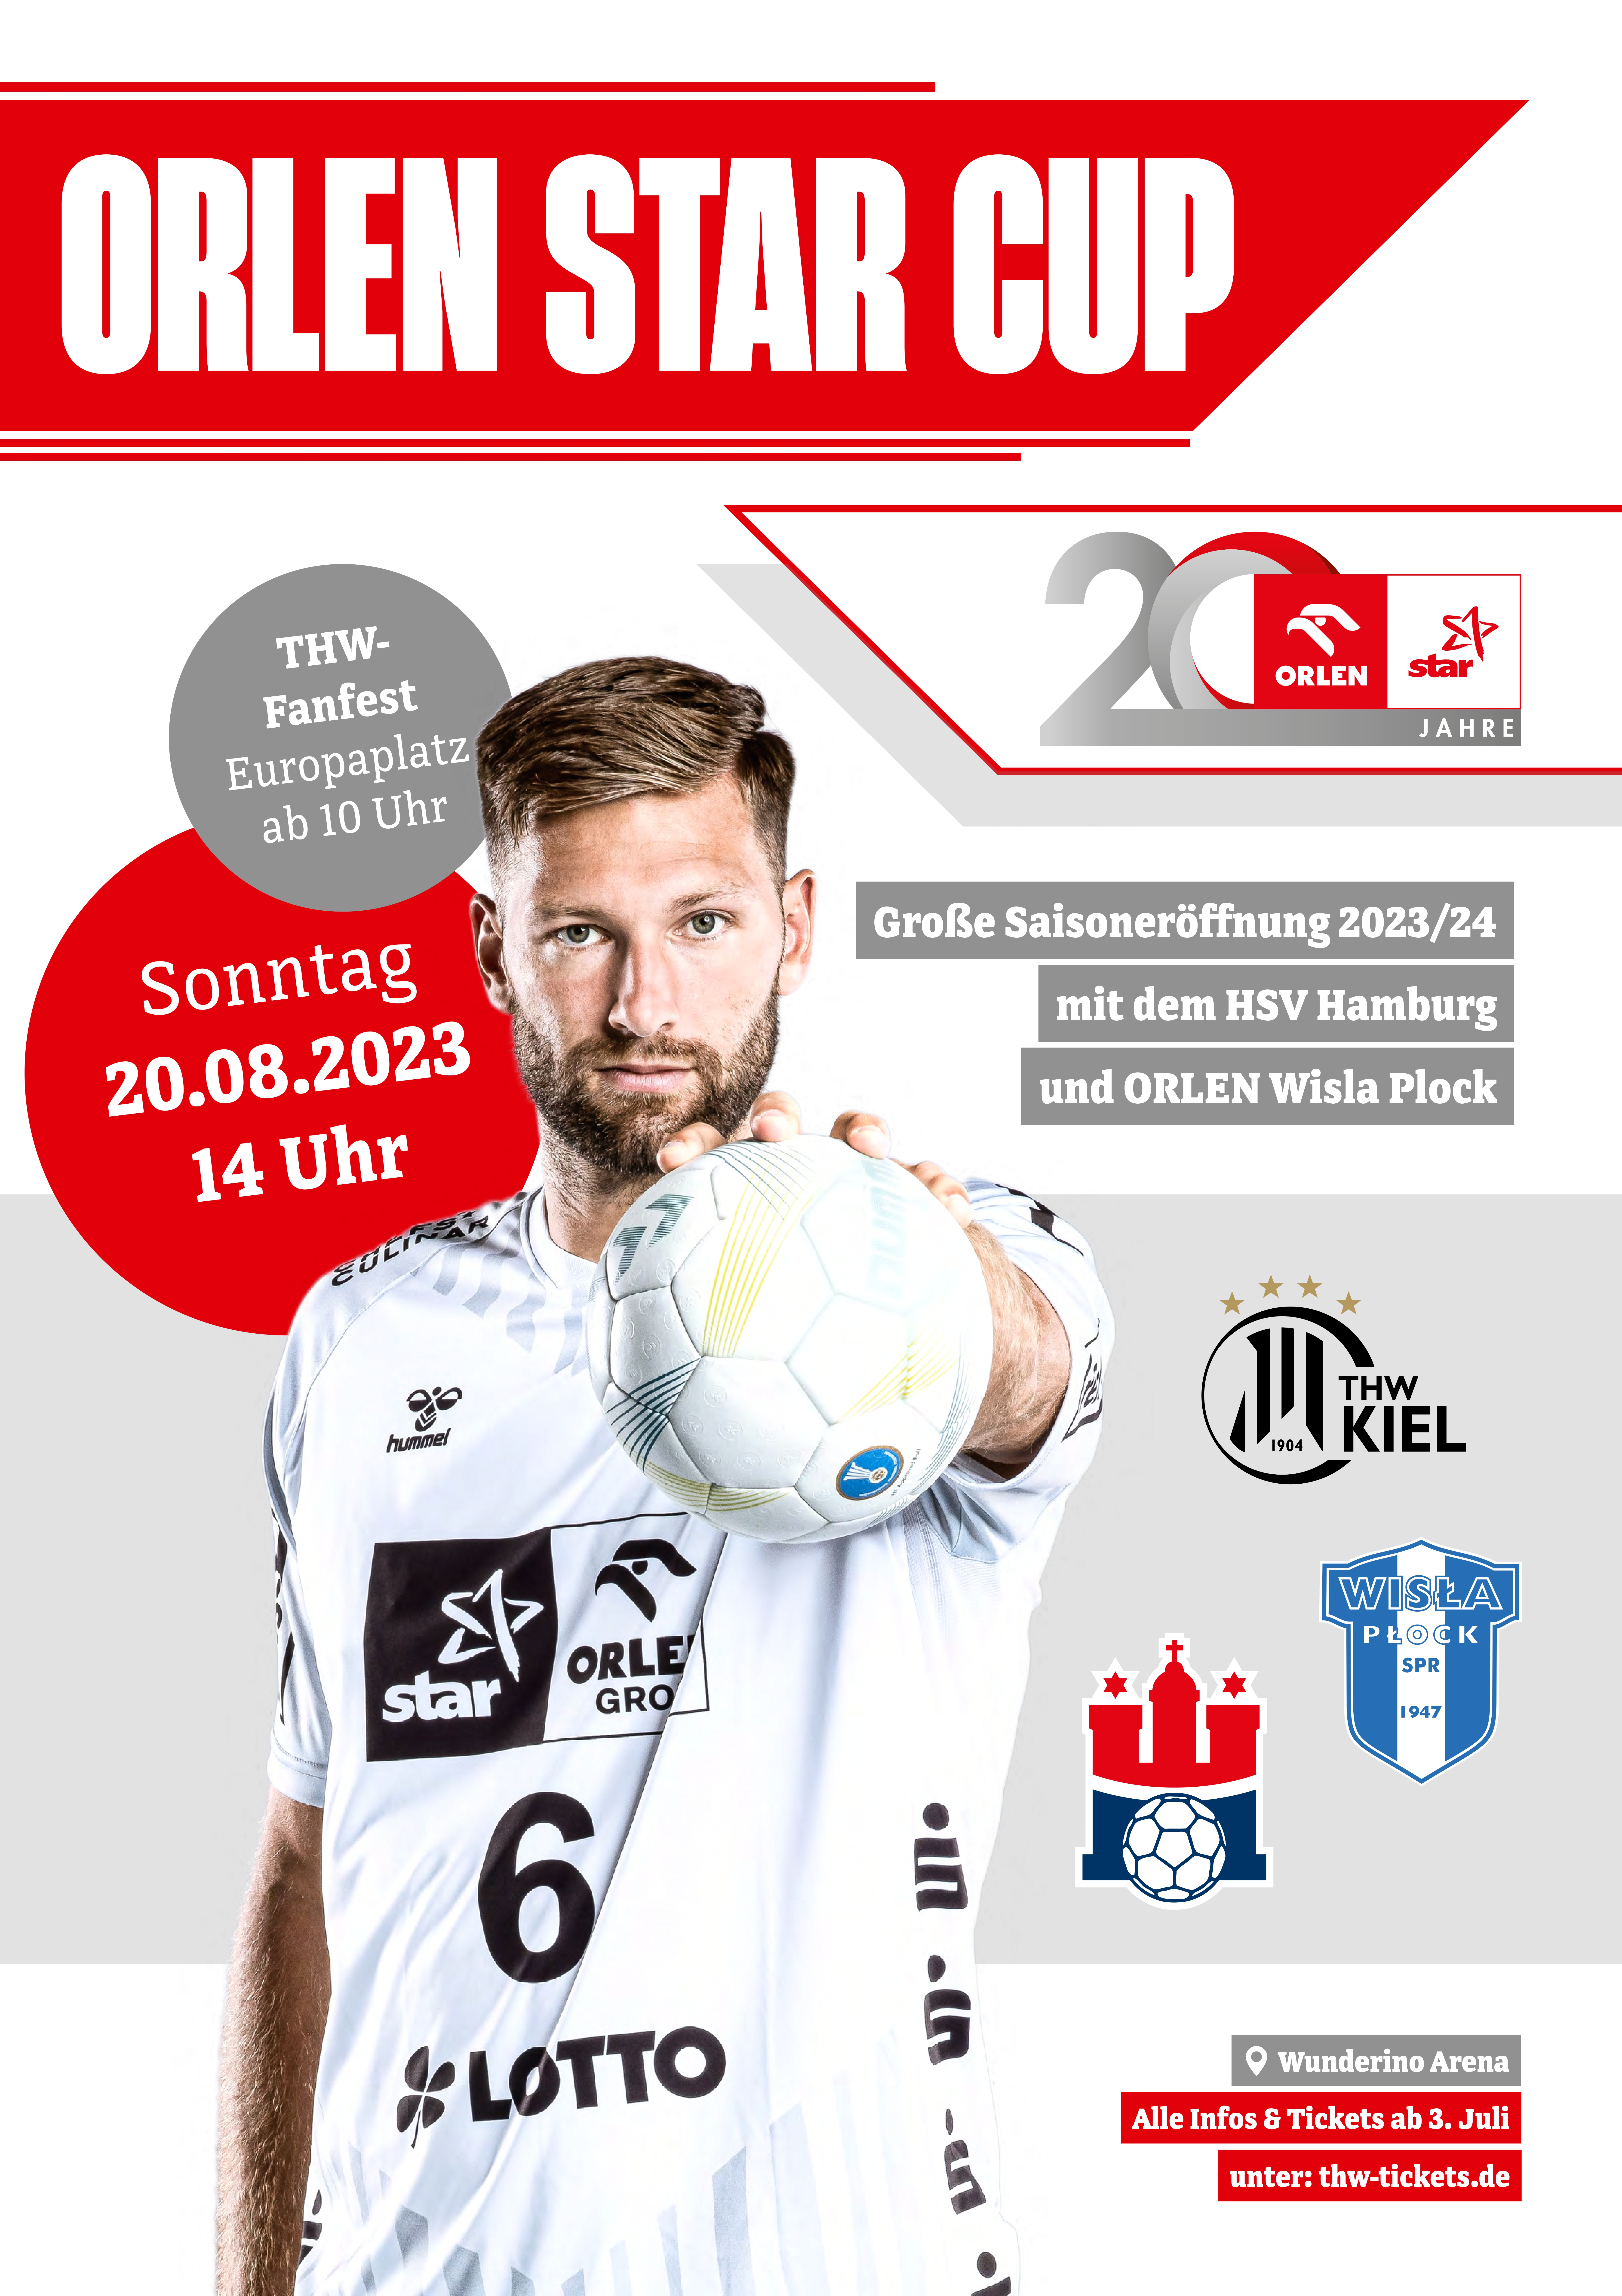 THW Kiel startet mit ORLEN star Cup in die Saison 2023/24 Presseportal